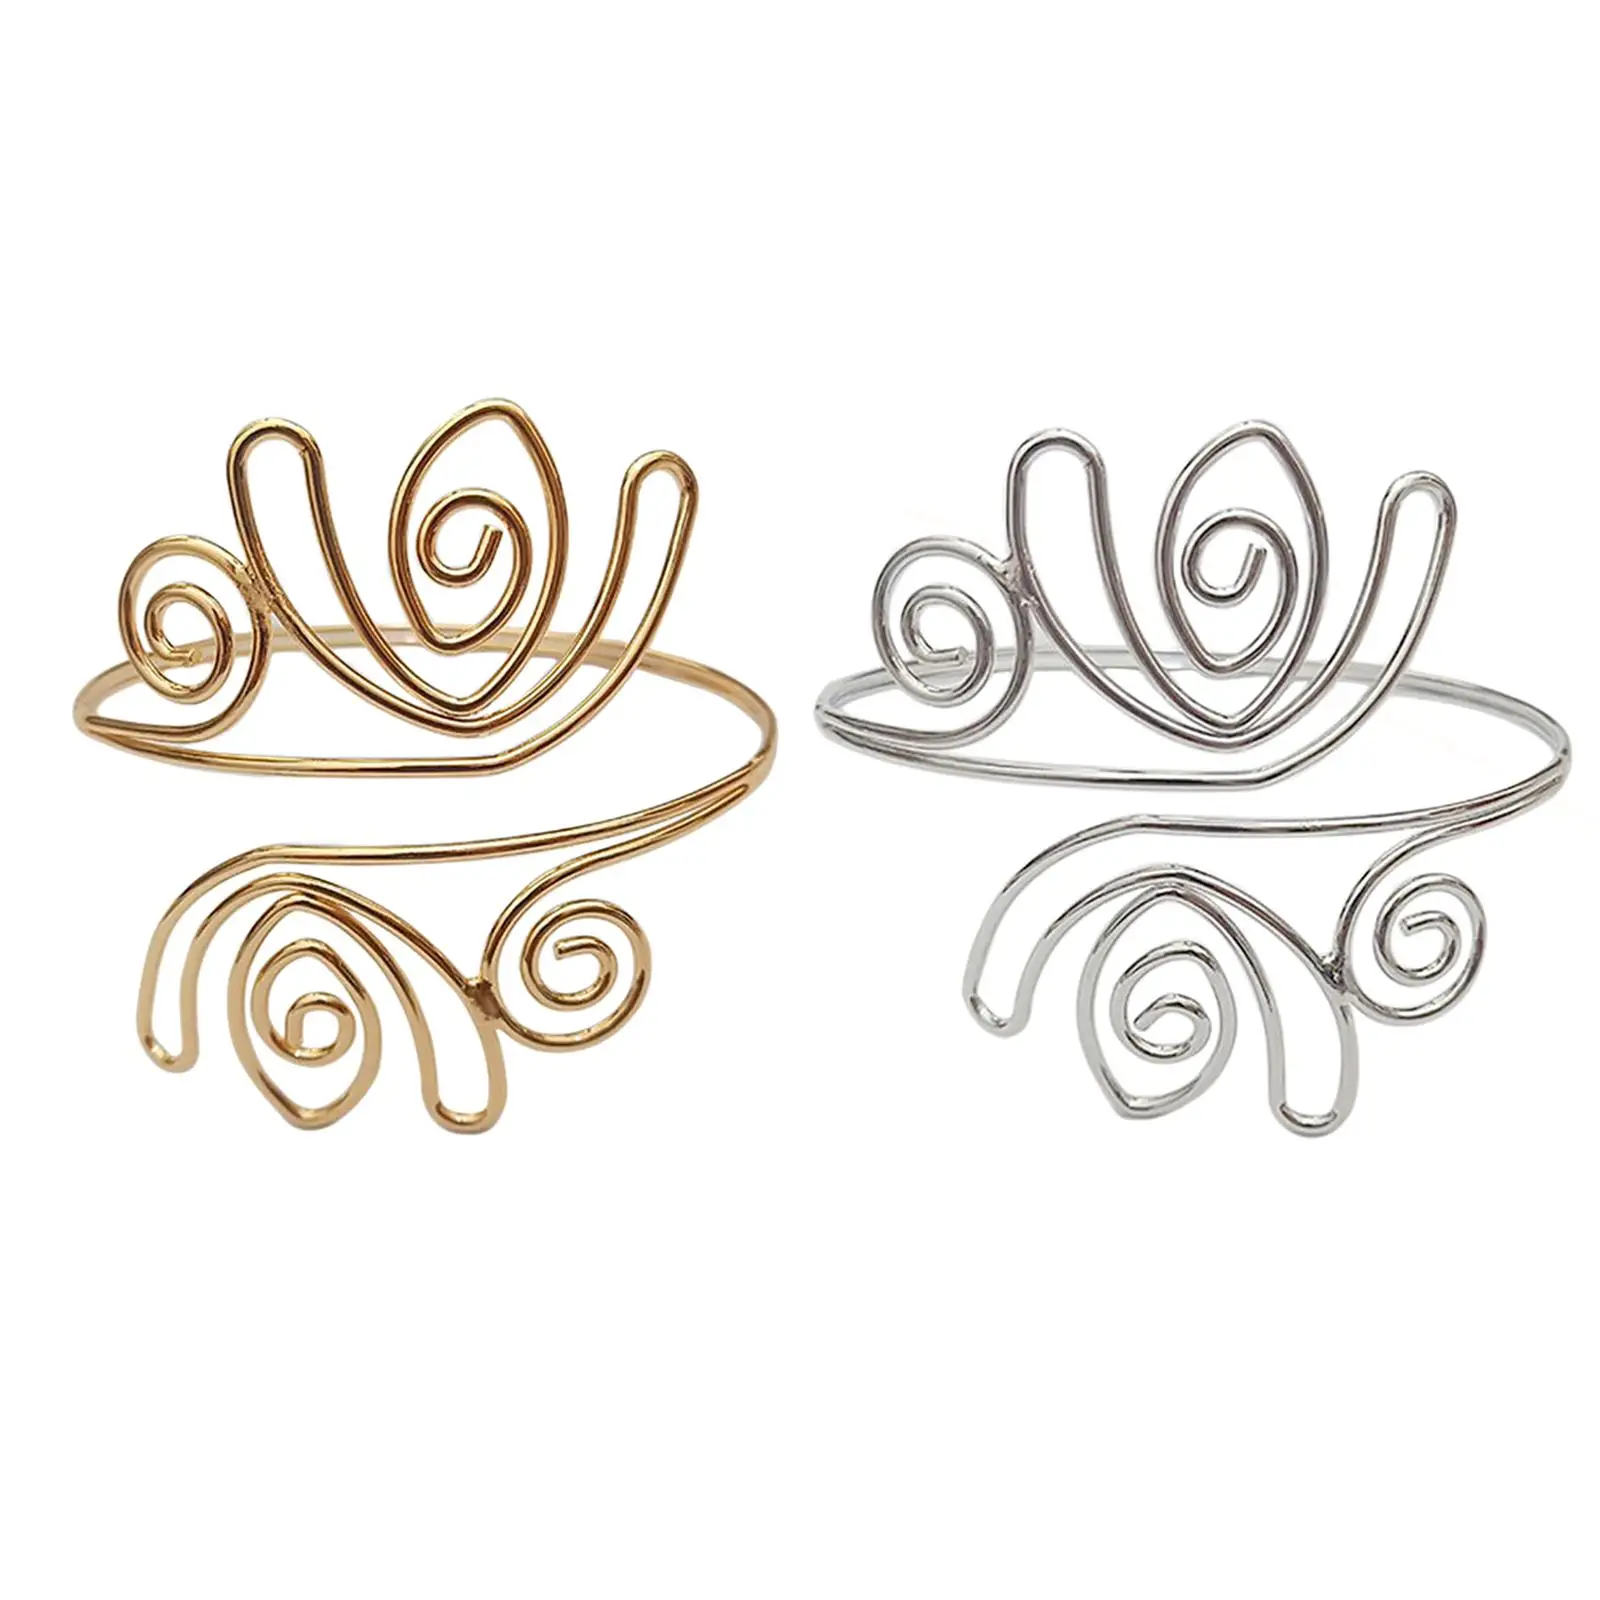 2 Pieces Swirl Upper Arm Cuff Bangle Jewelry Bracelet Armband Beach Jewelry